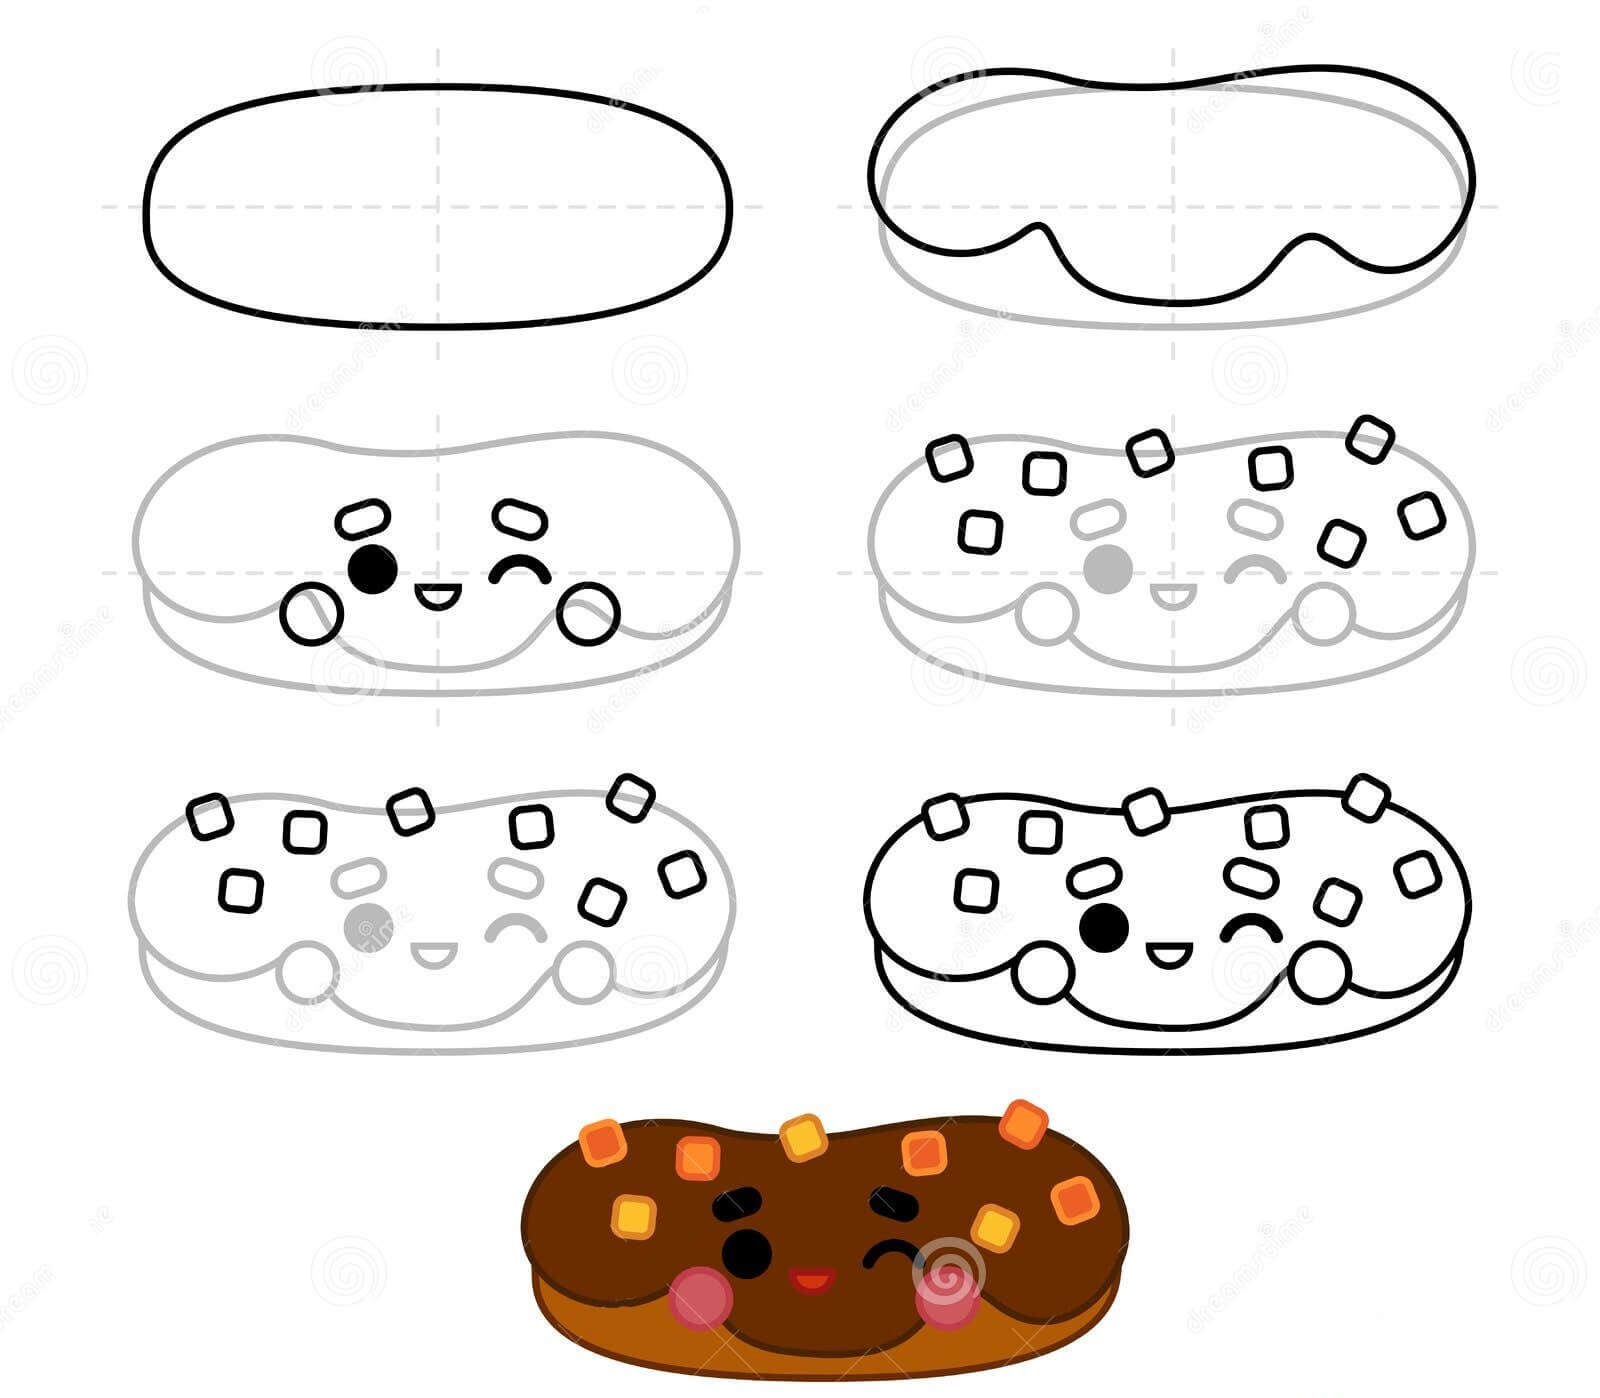 Donut-Idee (19) zeichnen ideen